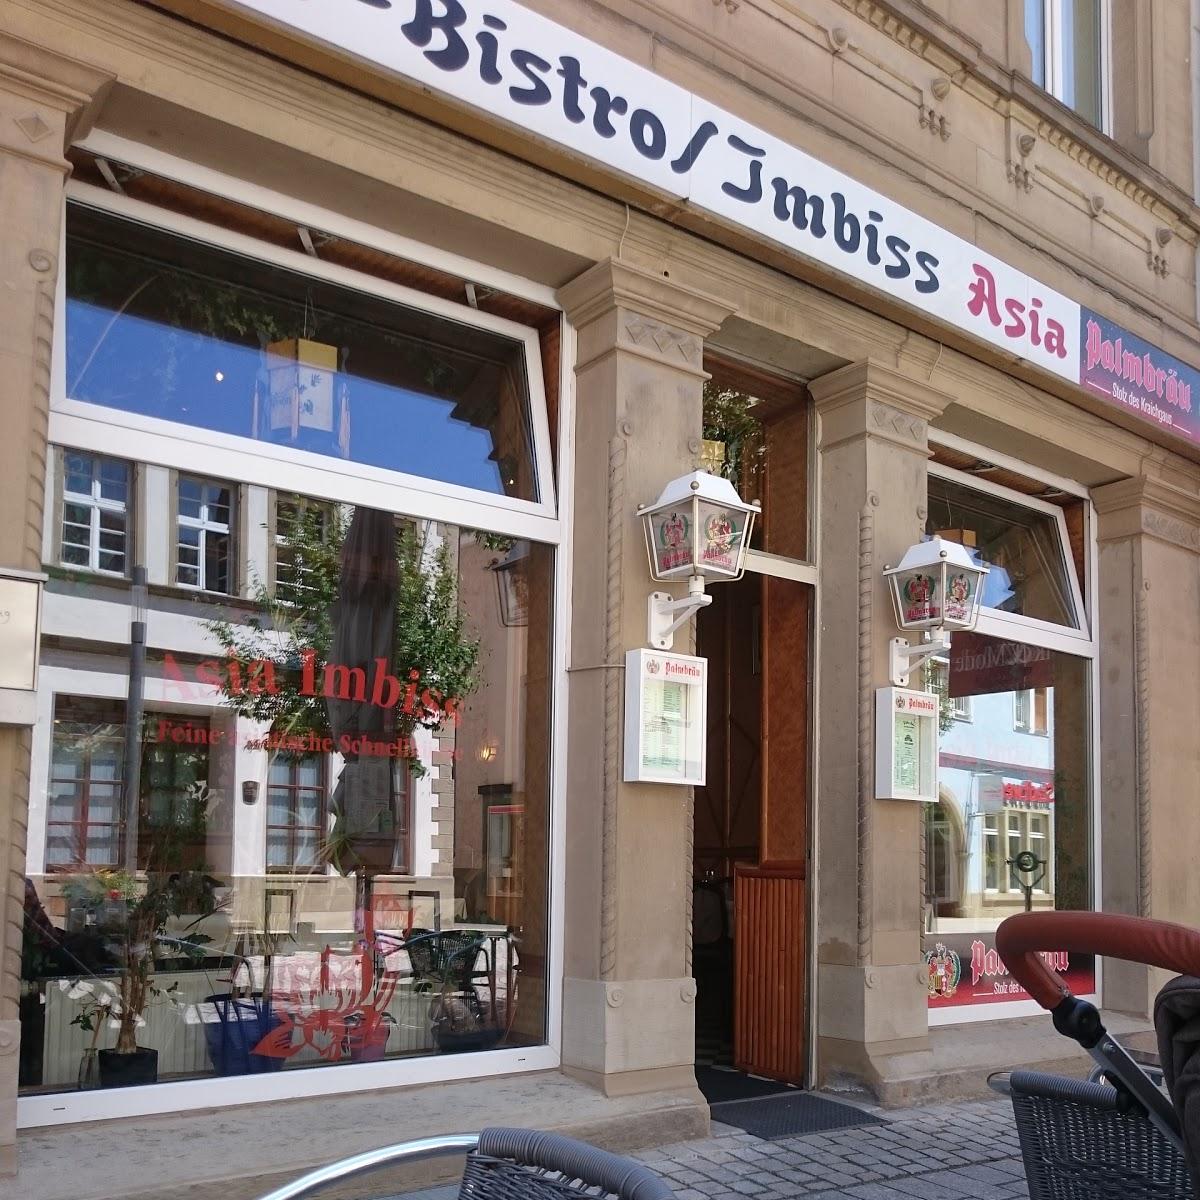 Restaurant "Bistro Asia" in  Eppingen